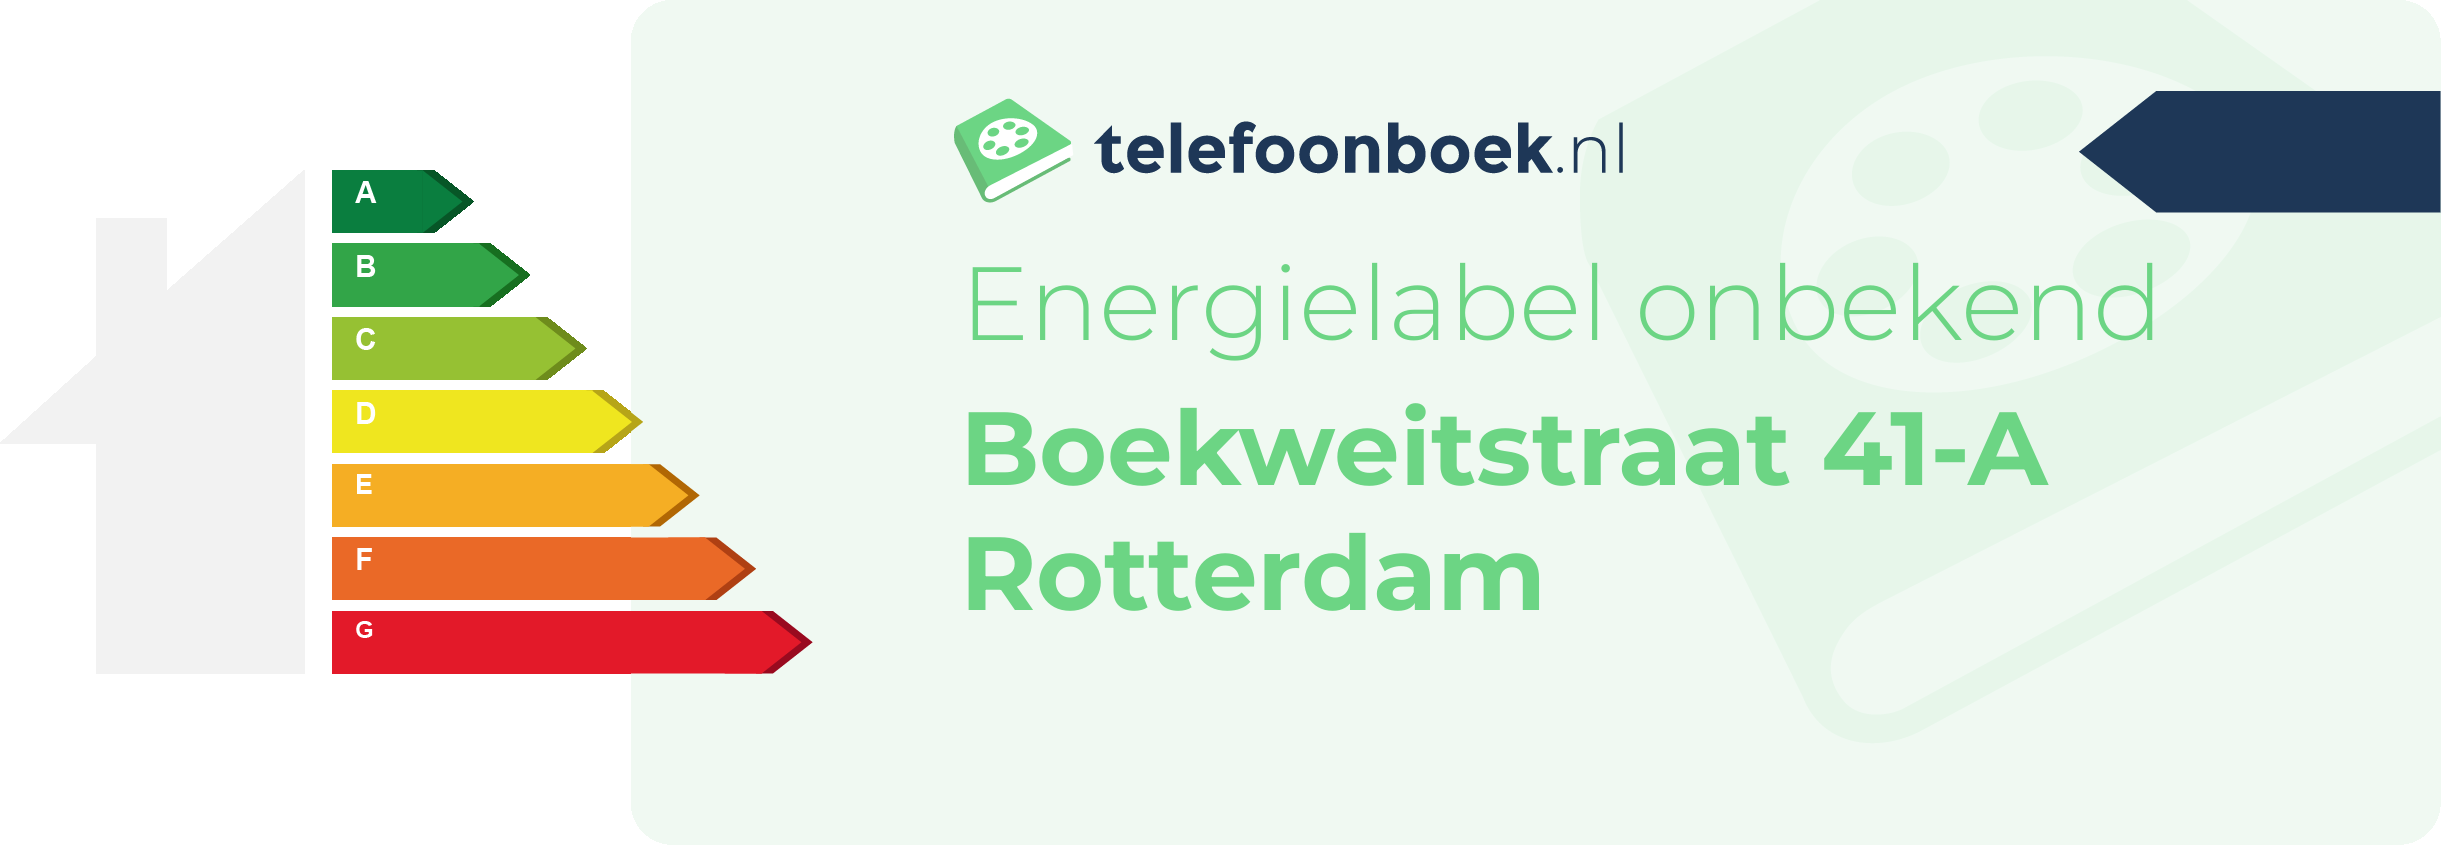 Energielabel Boekweitstraat 41-A Rotterdam